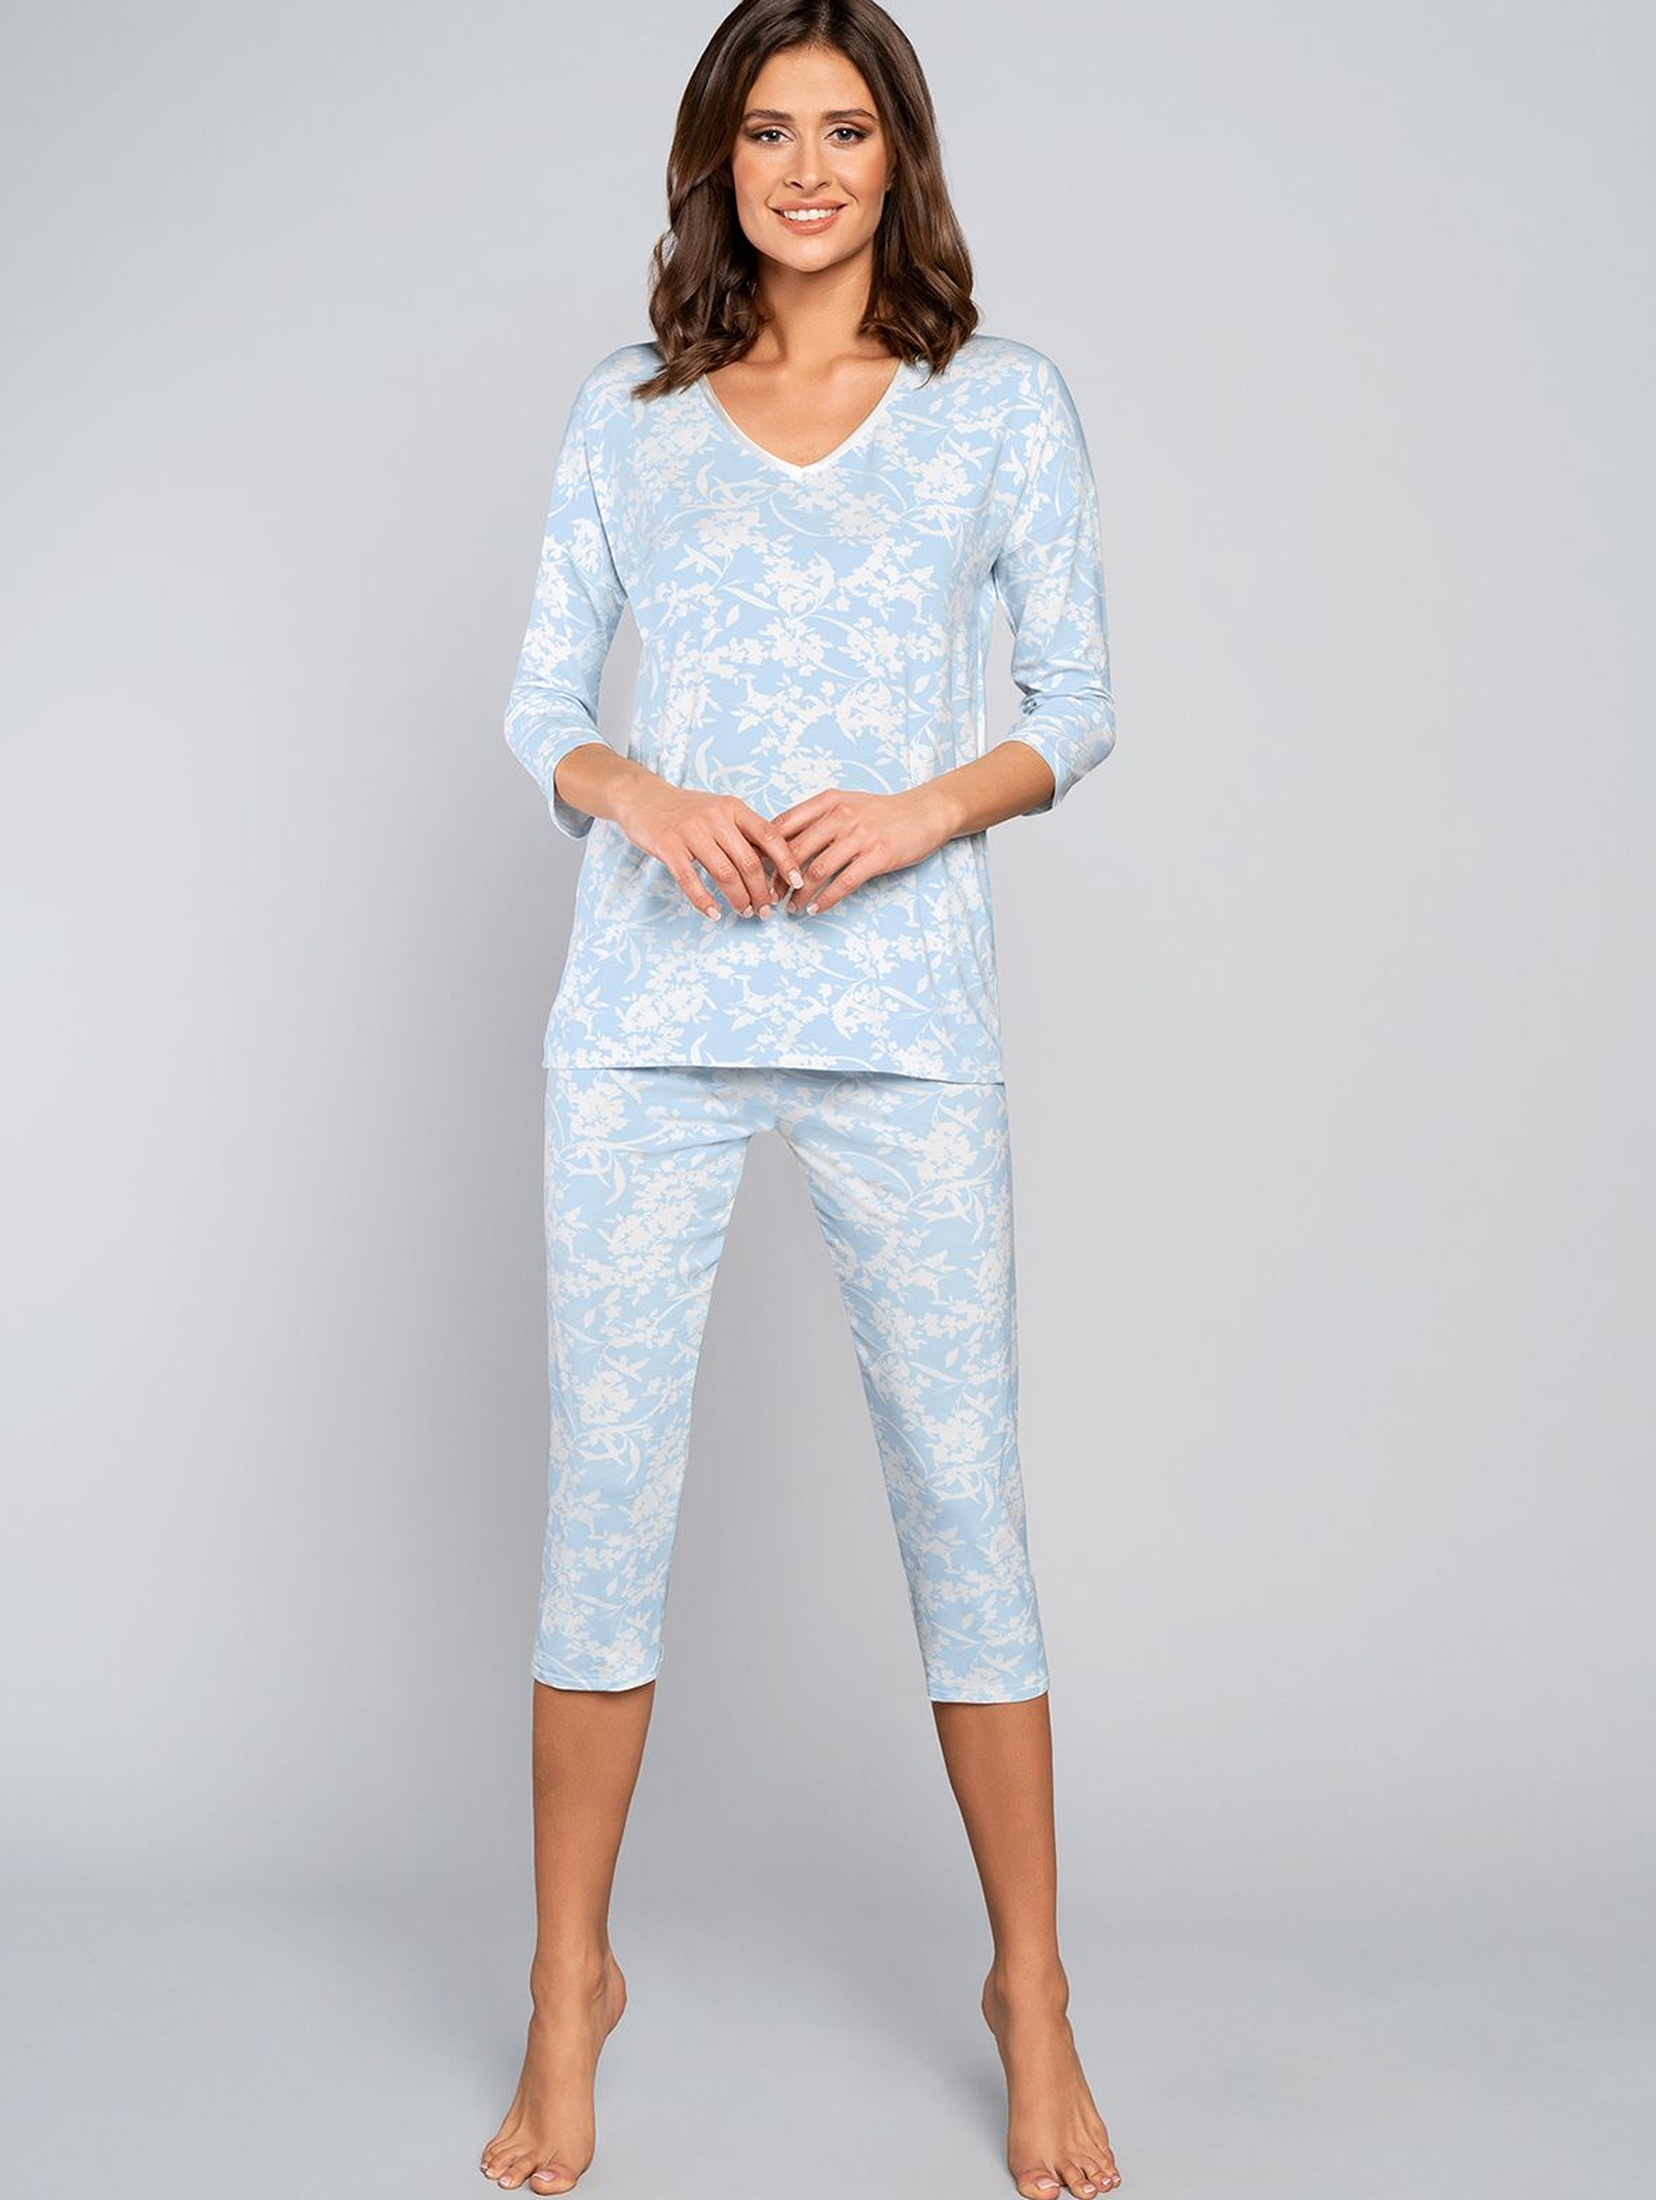 Piżama damska dwuczęściowa BRYZA - niebieska